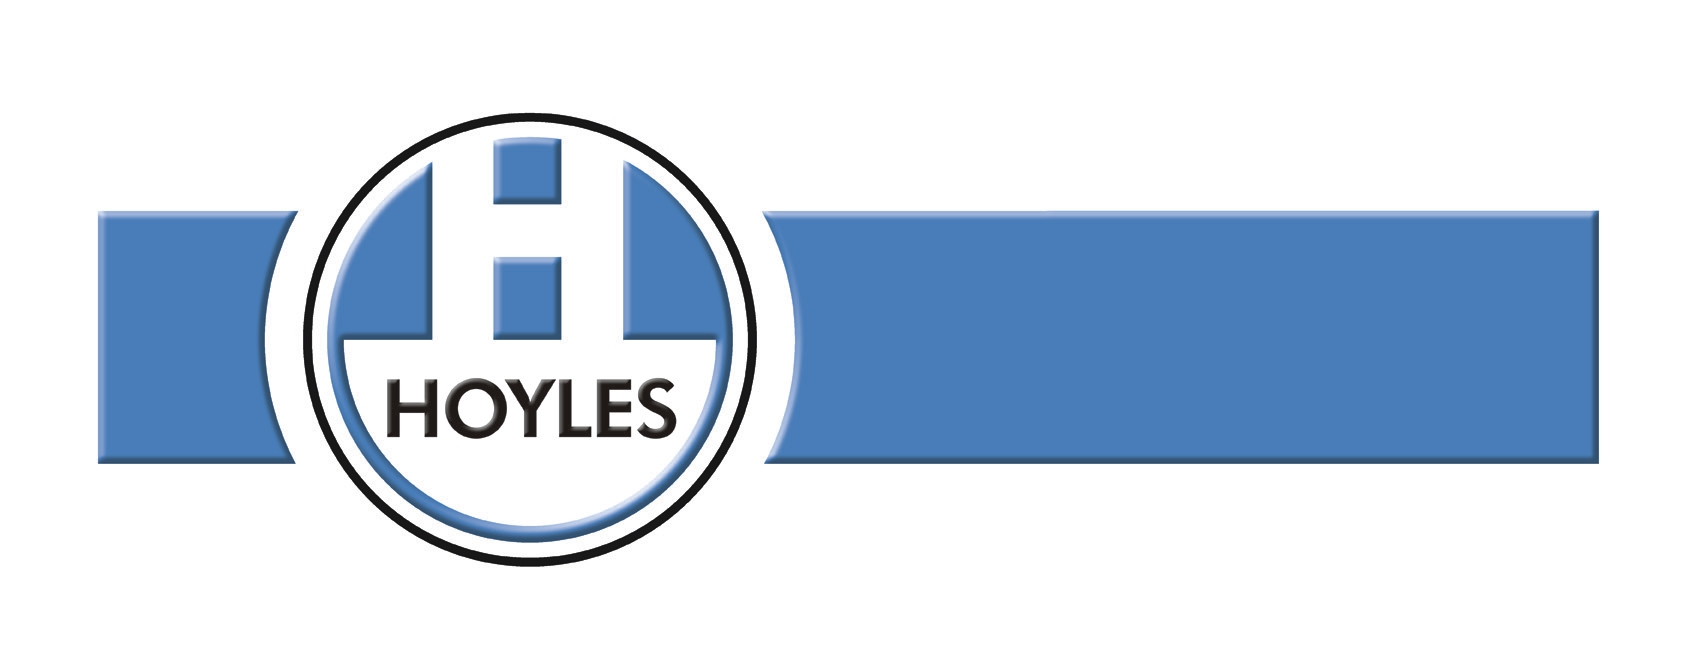 Hoyles Electronic Developments Ltd